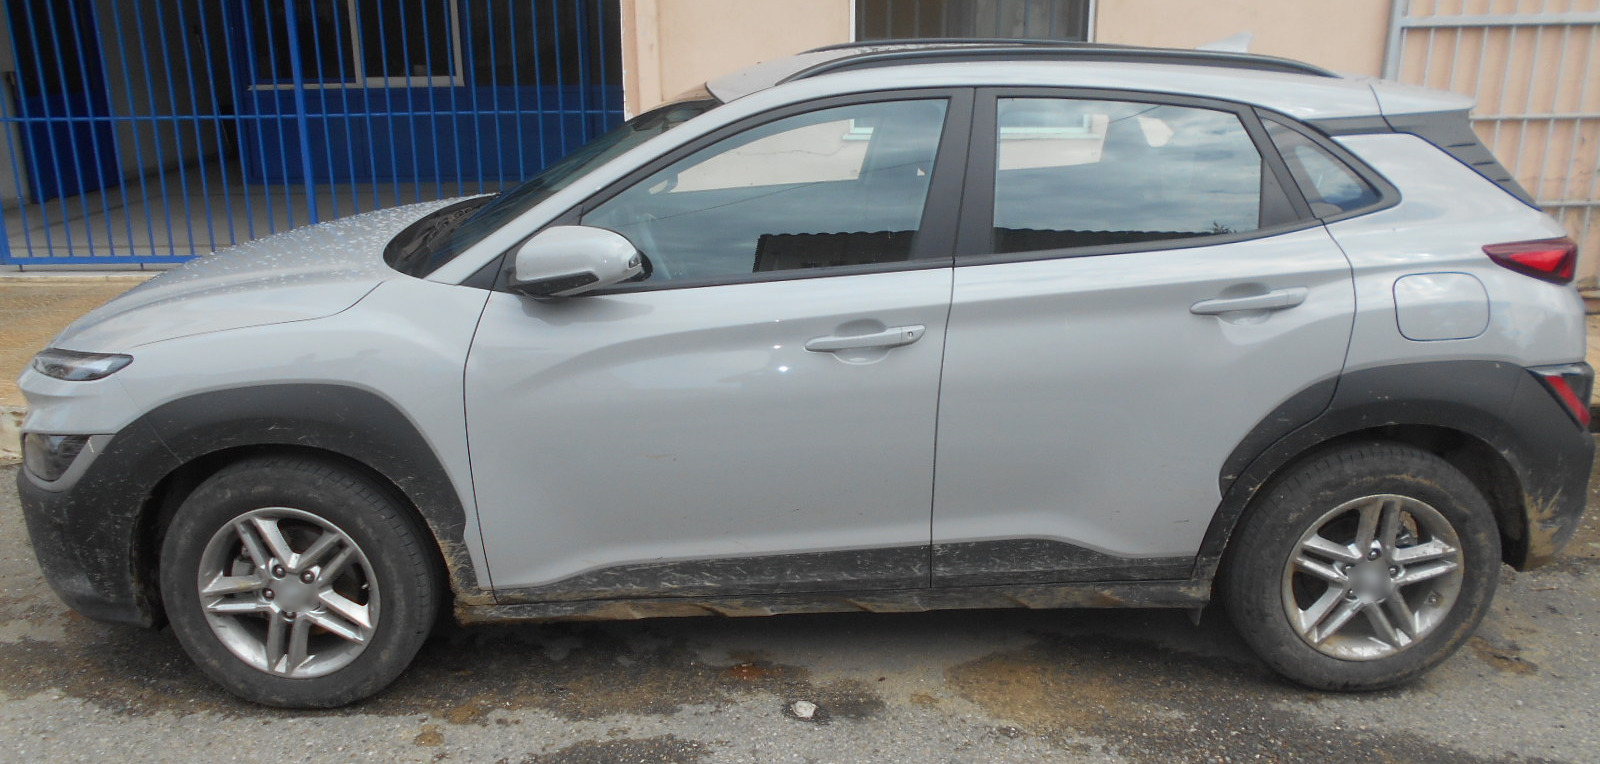 Εγνατία Οδός: Είδε το αυτοκίνητο που του έκλεψαν στη Θεσσαλονίκη να γίνεται η παρακάτω είδηση